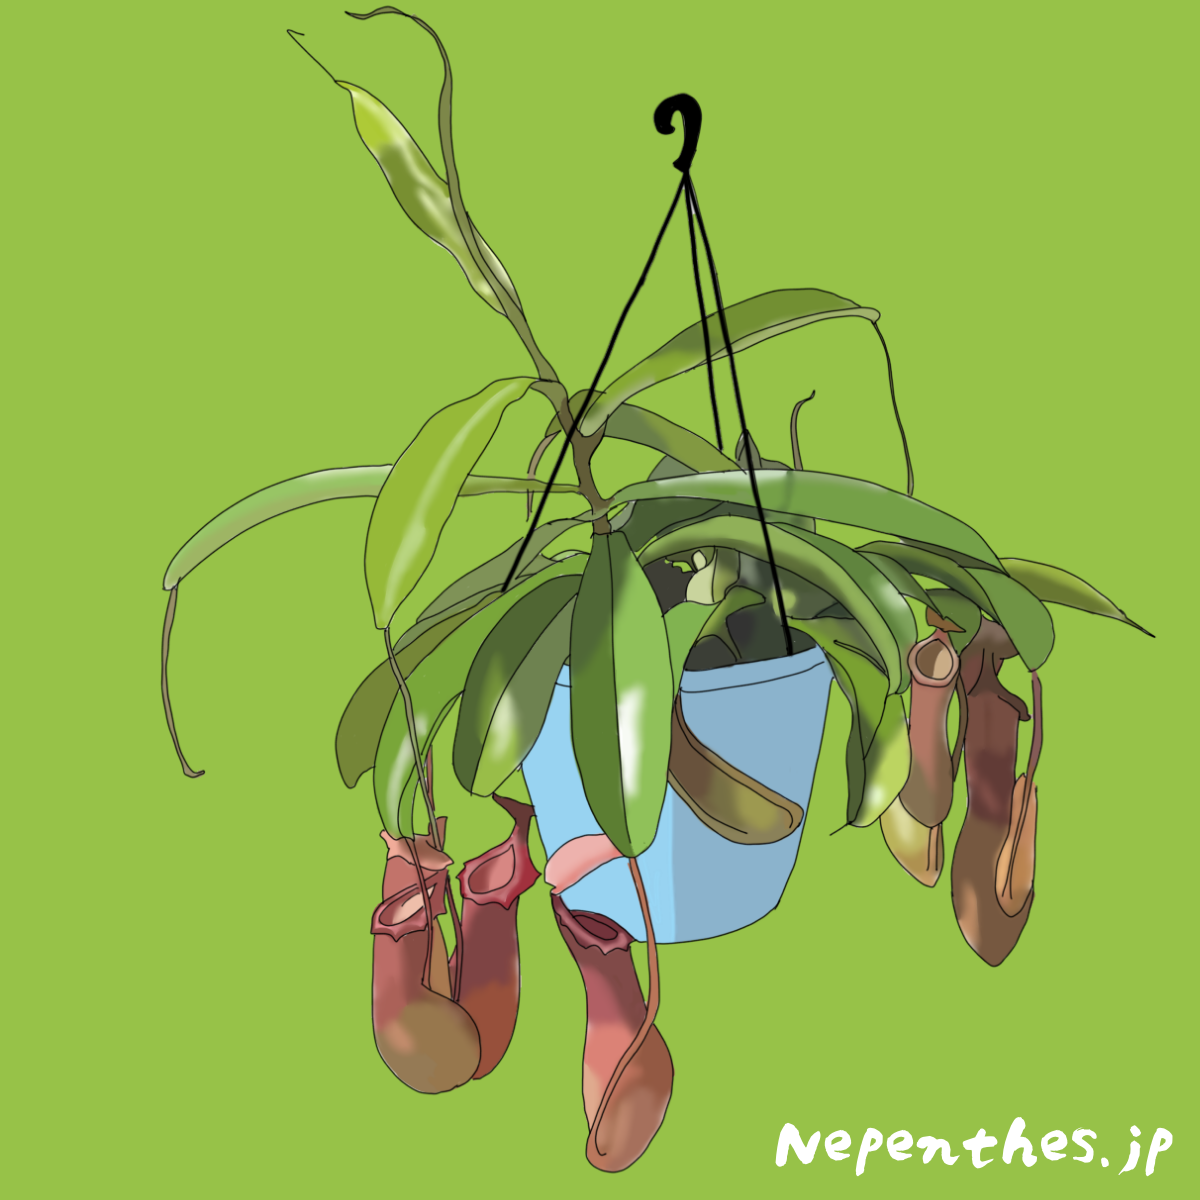 ネペンテス ウツボカズラ の代表種の一つ ネペンテス ベントラータ ベントラータの基本情報から特徴や育て方 おススメの栽培方法までご紹介 ネペ吉のブログ